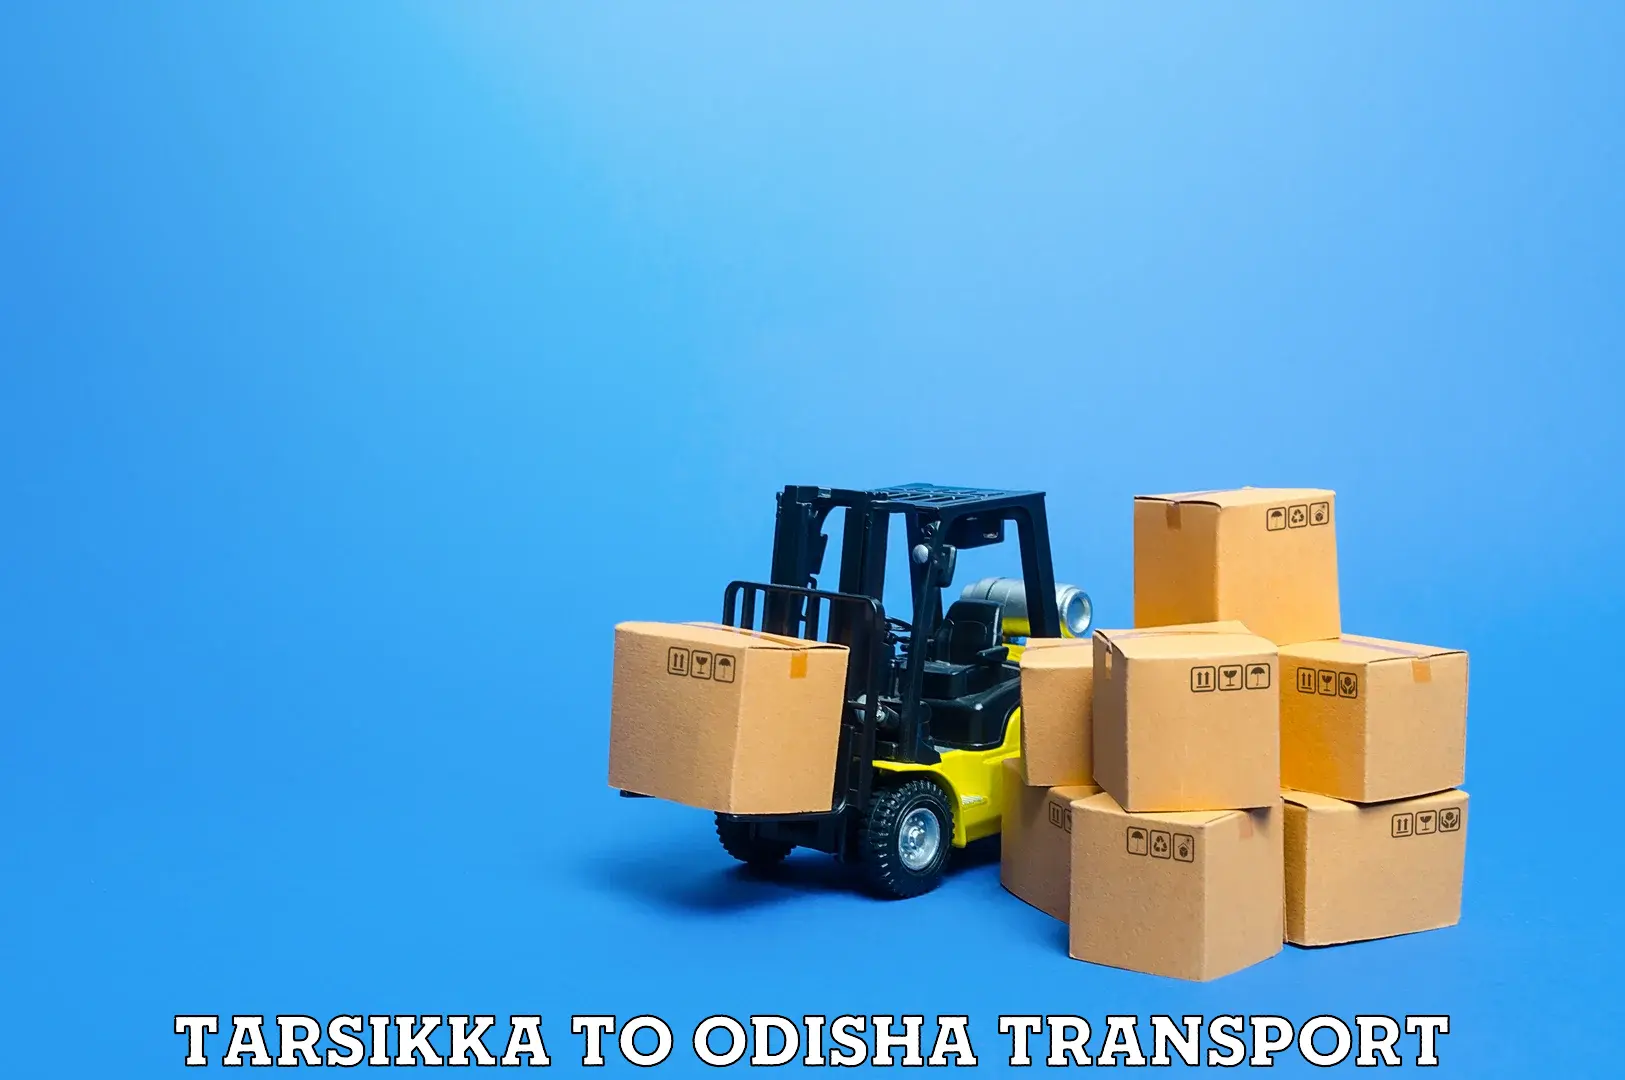 Luggage transport services Tarsikka to Telkoi